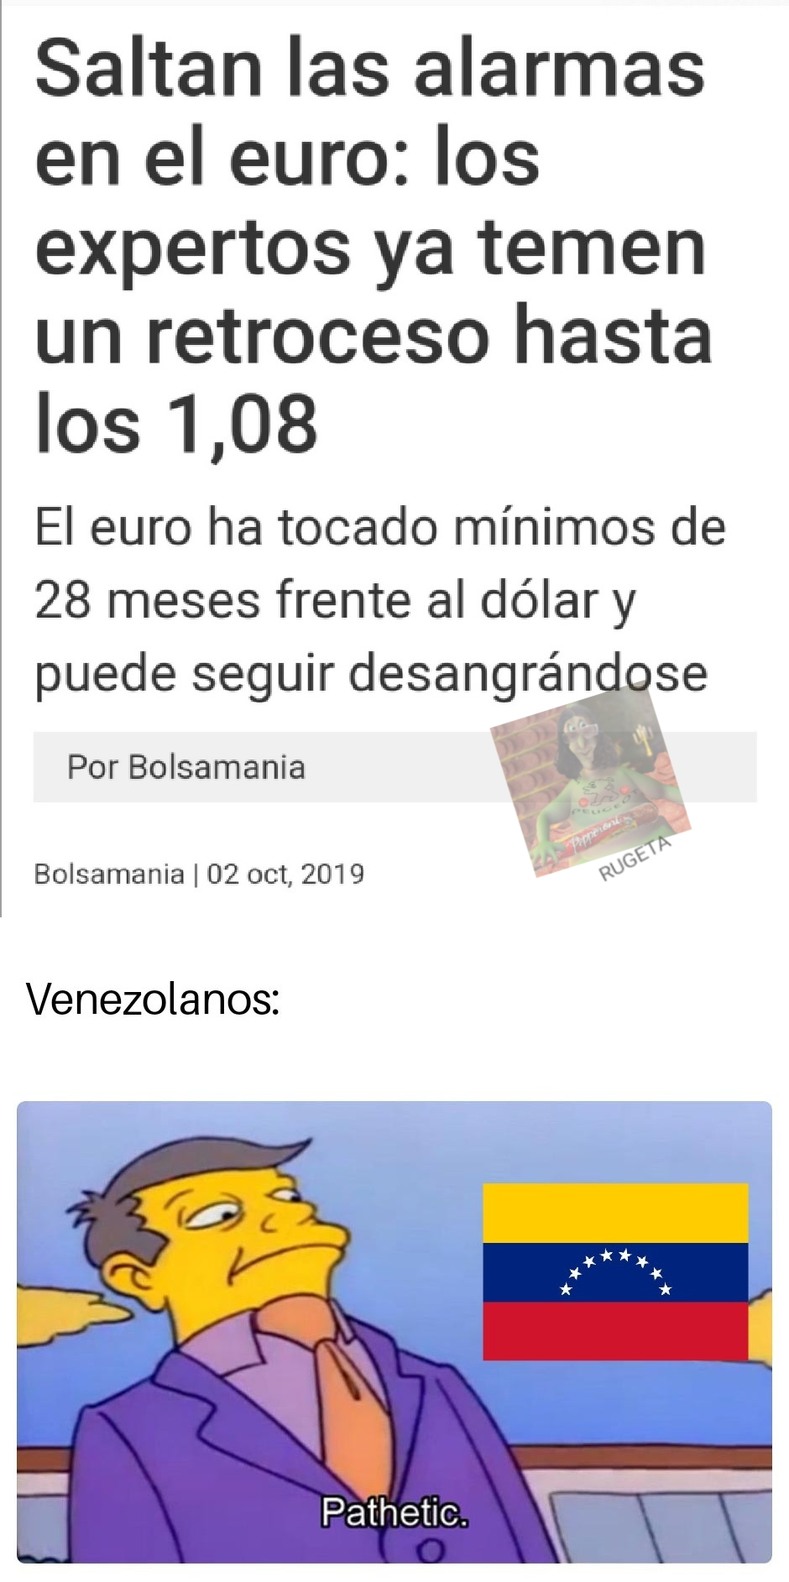 Venezuela 4 ever - meme